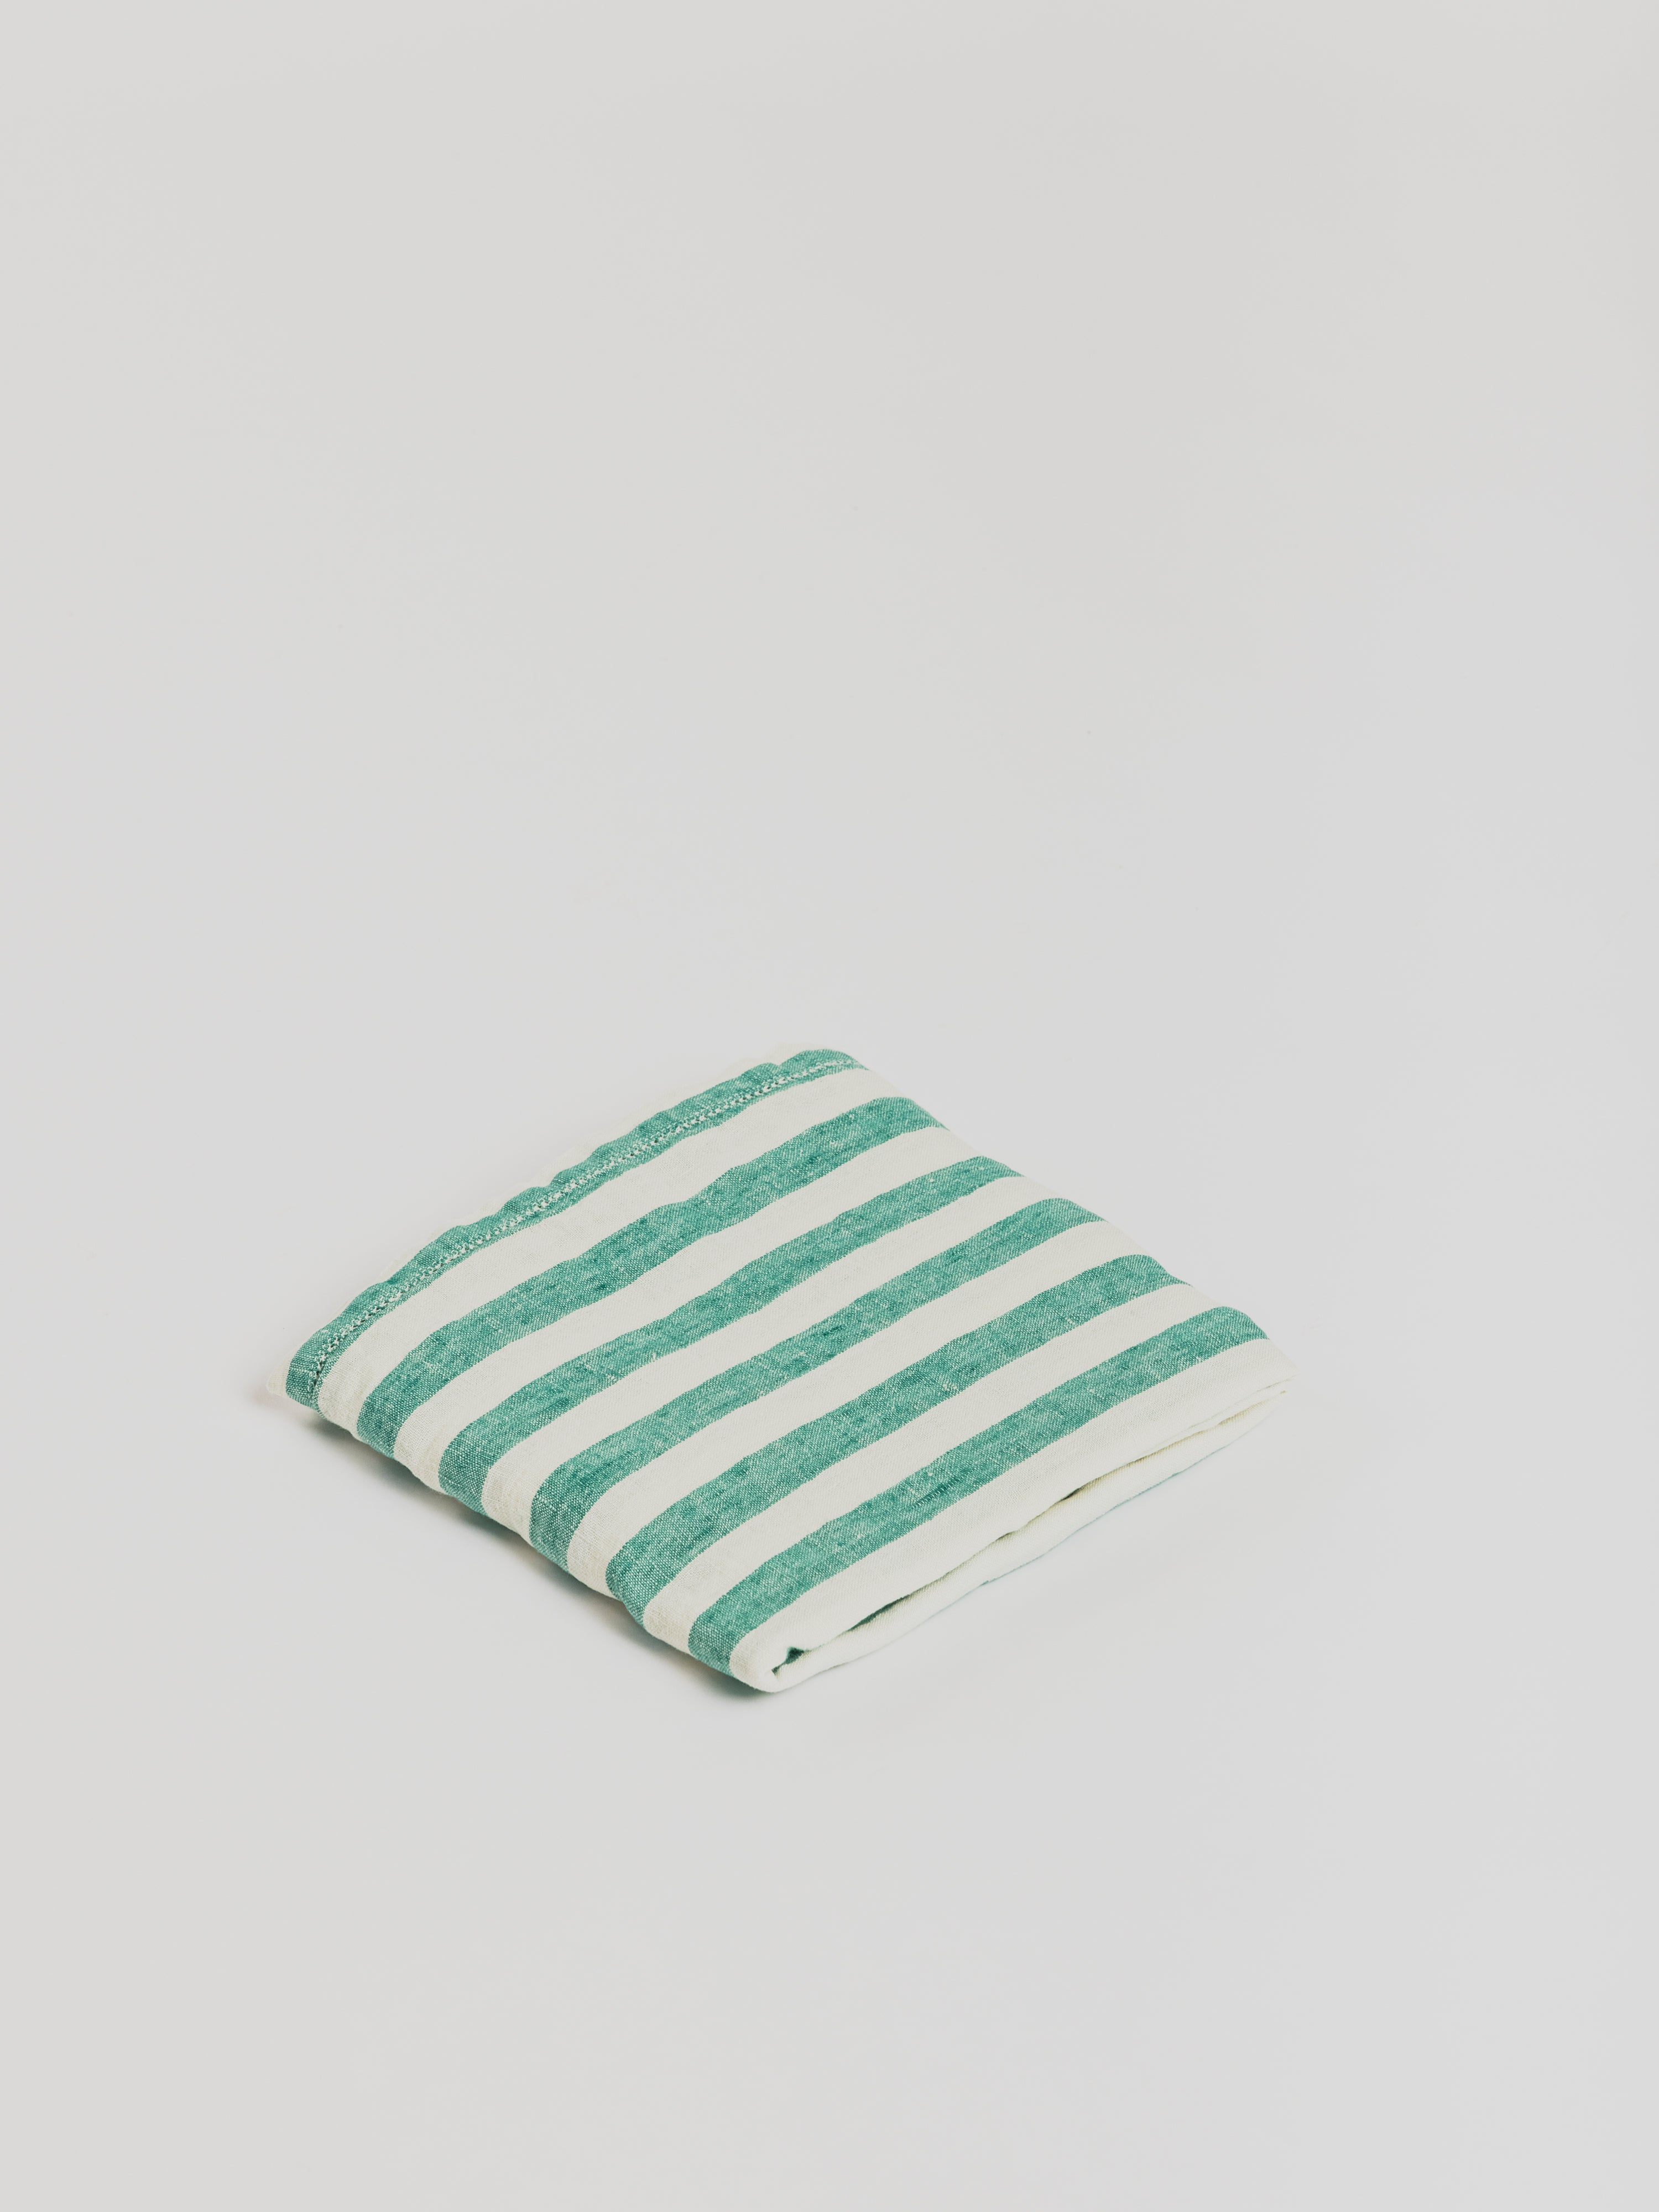 Linen Beach Towel - Stripes Aegean Green / White - Cigale et Fourmi